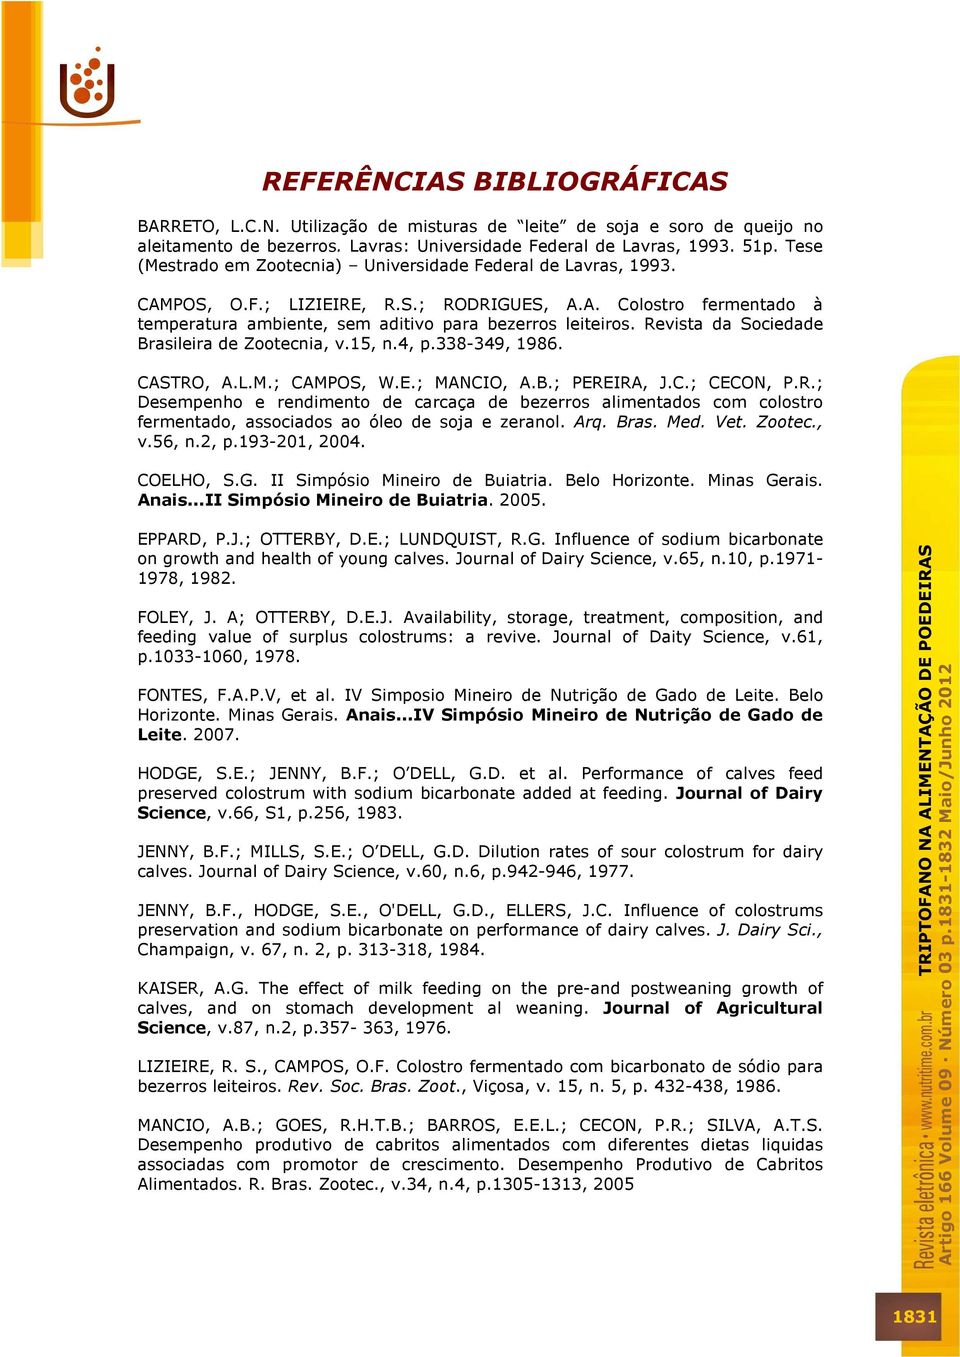 Revista da Sociedade Brasileira de Zootecnia, v.15, n.4, p.338-349, 1986. CASTRO, A.L.M.; CAMPOS, W.E.; MANCIO, A.B.; PEREIRA, J.C.; CECON, P.R.; Desempenho e rendimento de carcaça de bezerros alimentados com colostro fermentado, associados ao óleo de soja e zeranol.